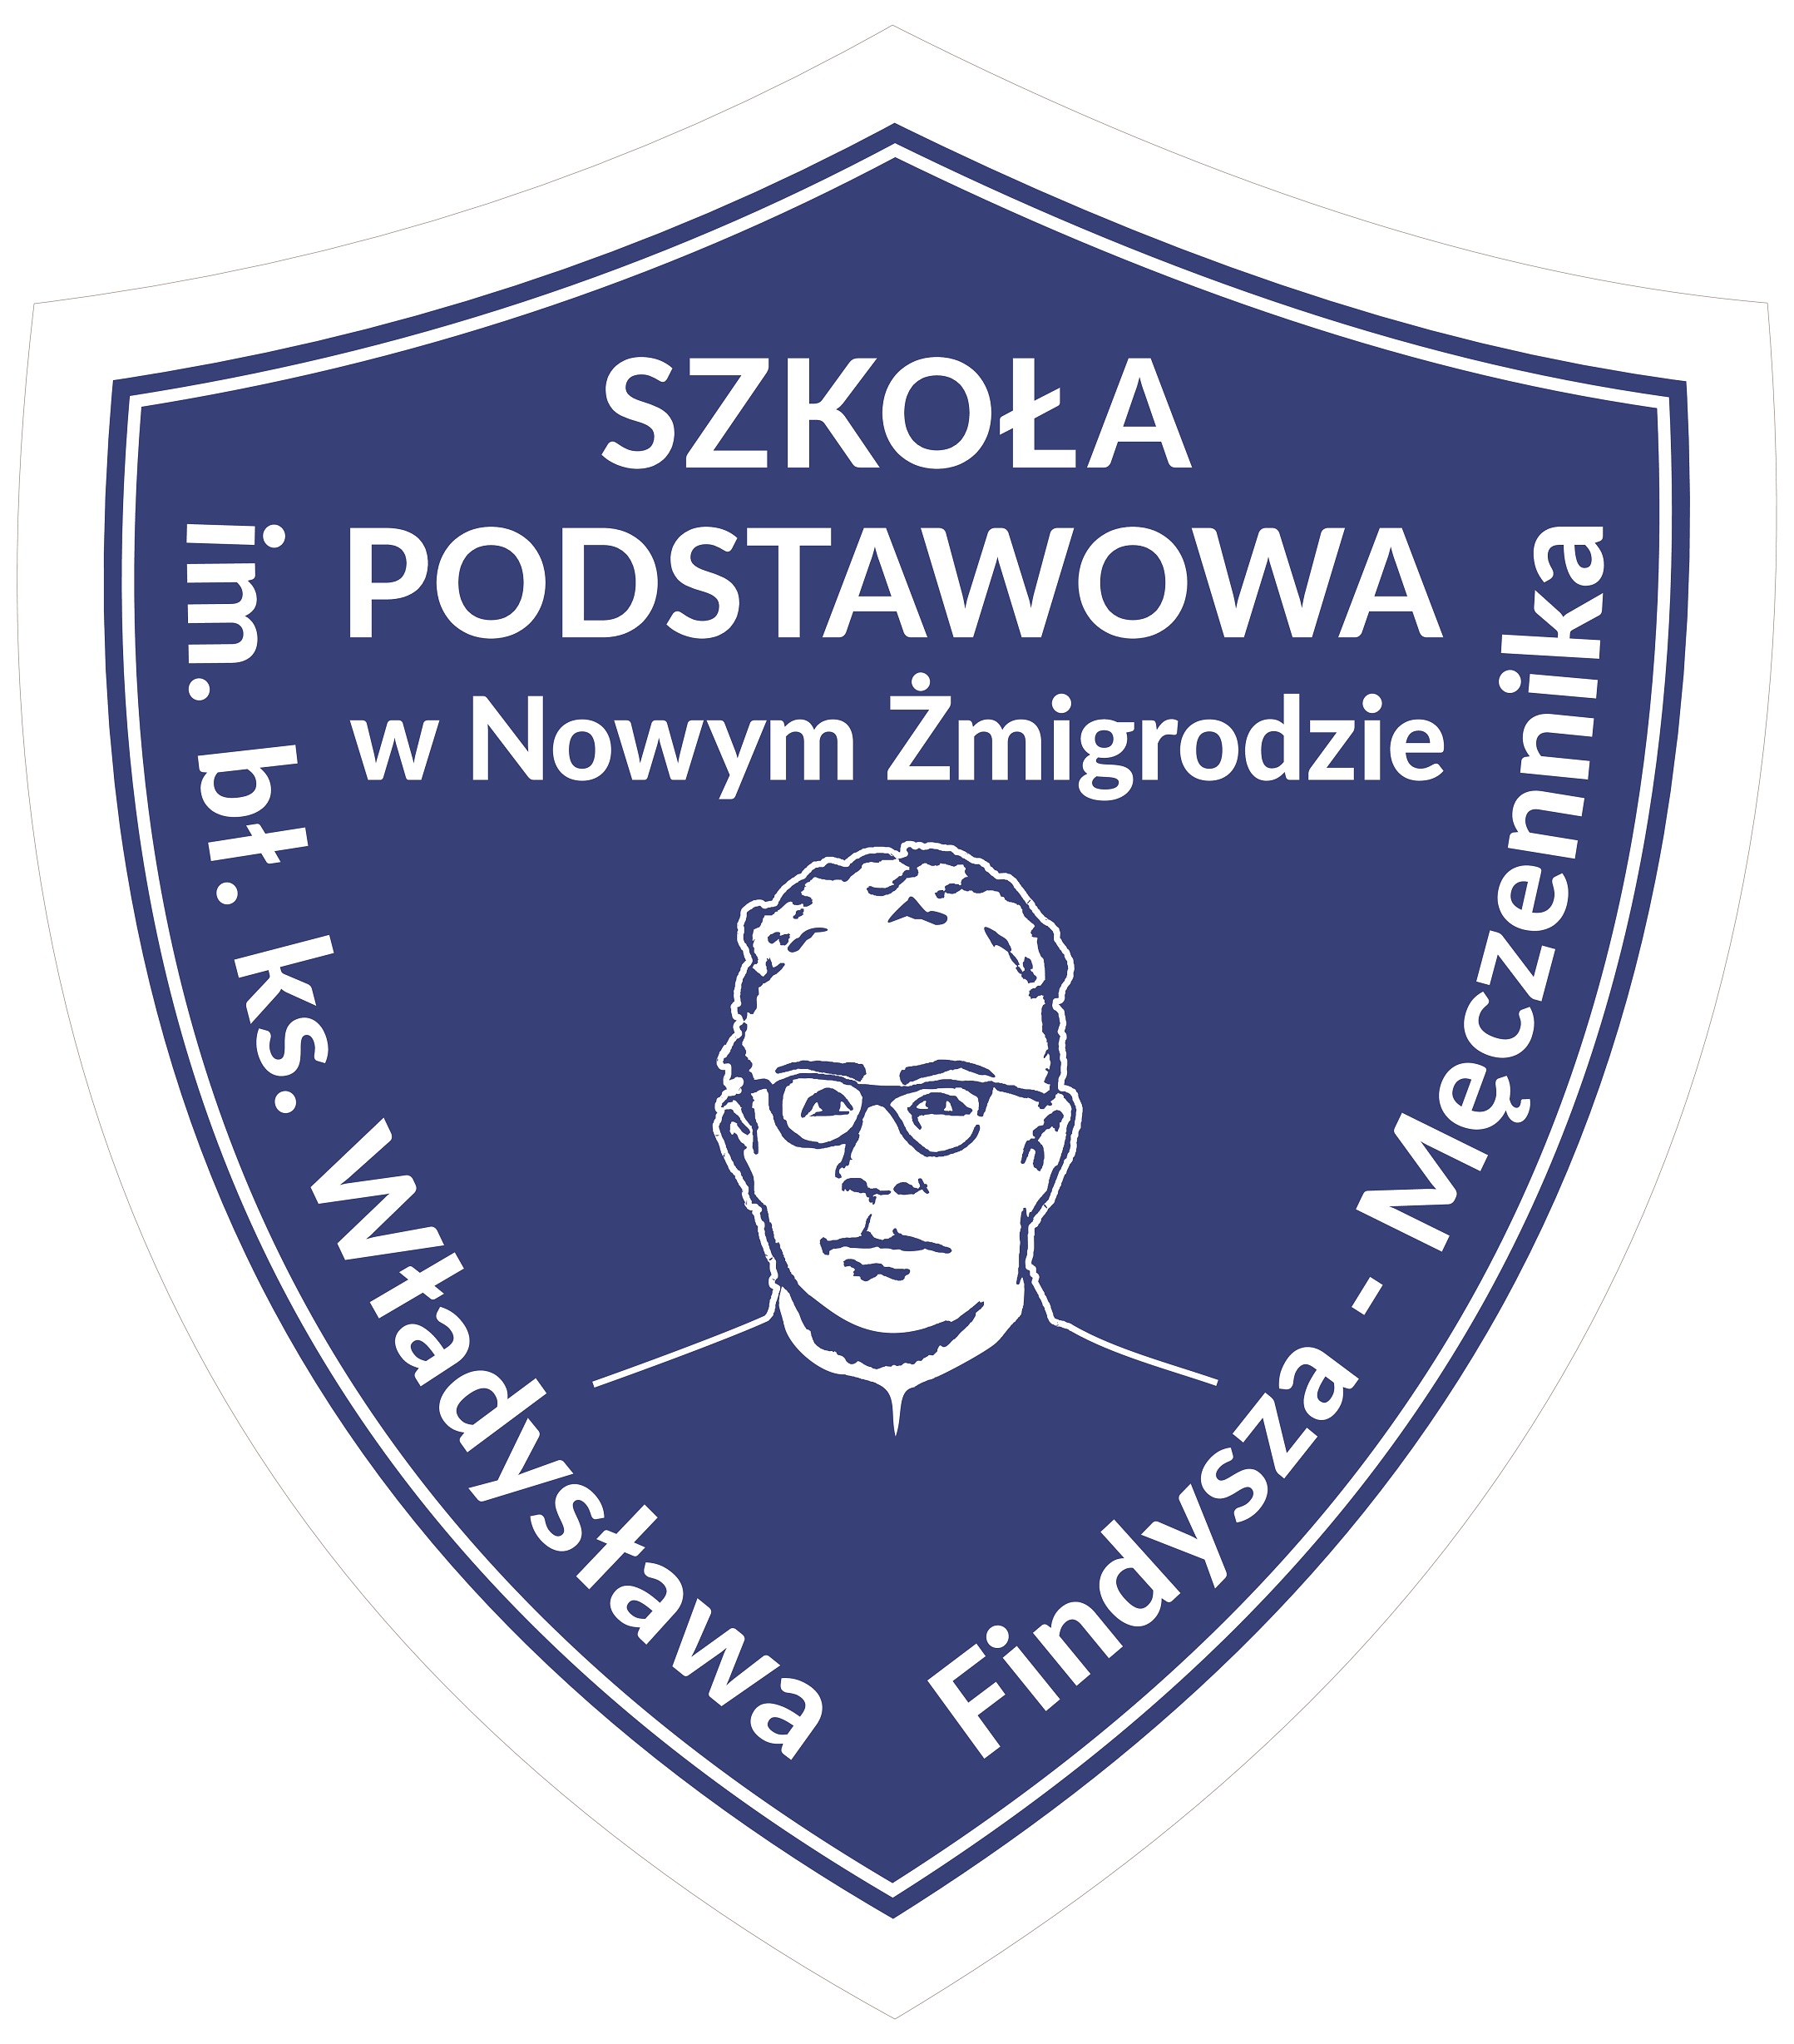 Szkoła Podstawowa w Nowym Żmigrodzie www.nowyzmigrod.edu.pl